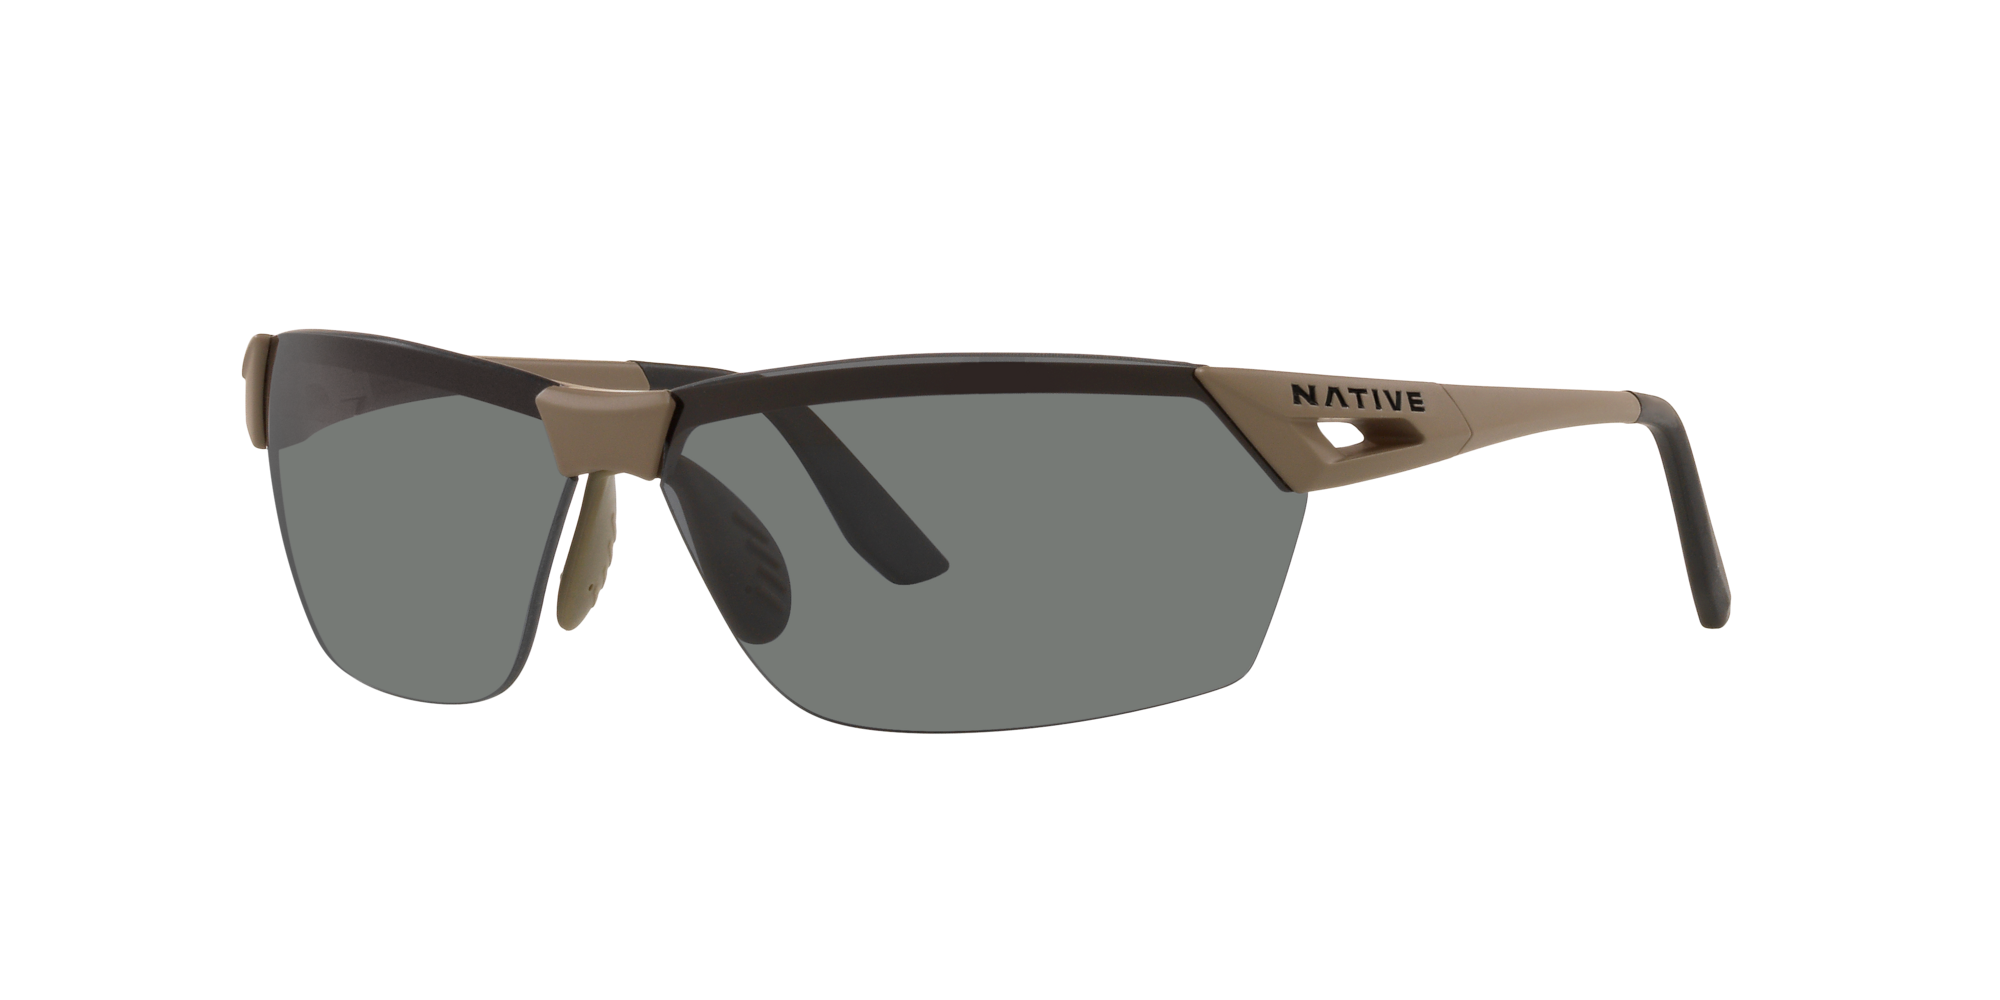 0円 安い 激安 プチプラ 高品質 取寄 ヴァイガー AF ポーラライズド サングラス Native Vigor Polarized Sunglasses desert tan grey polarized